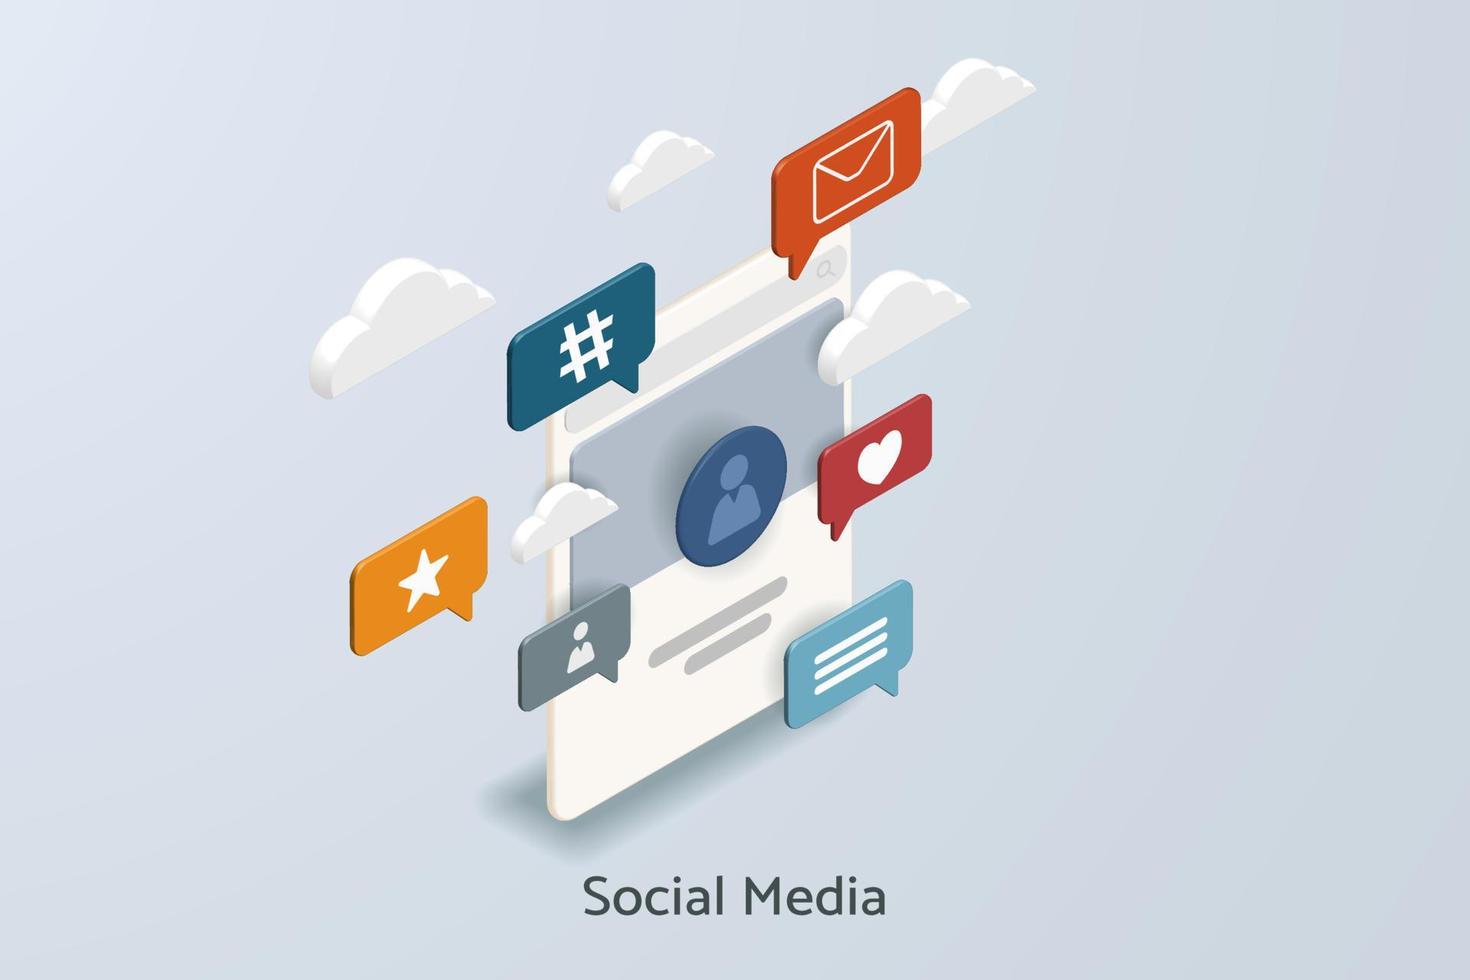 Social media platform with social media icons online social communication. vector